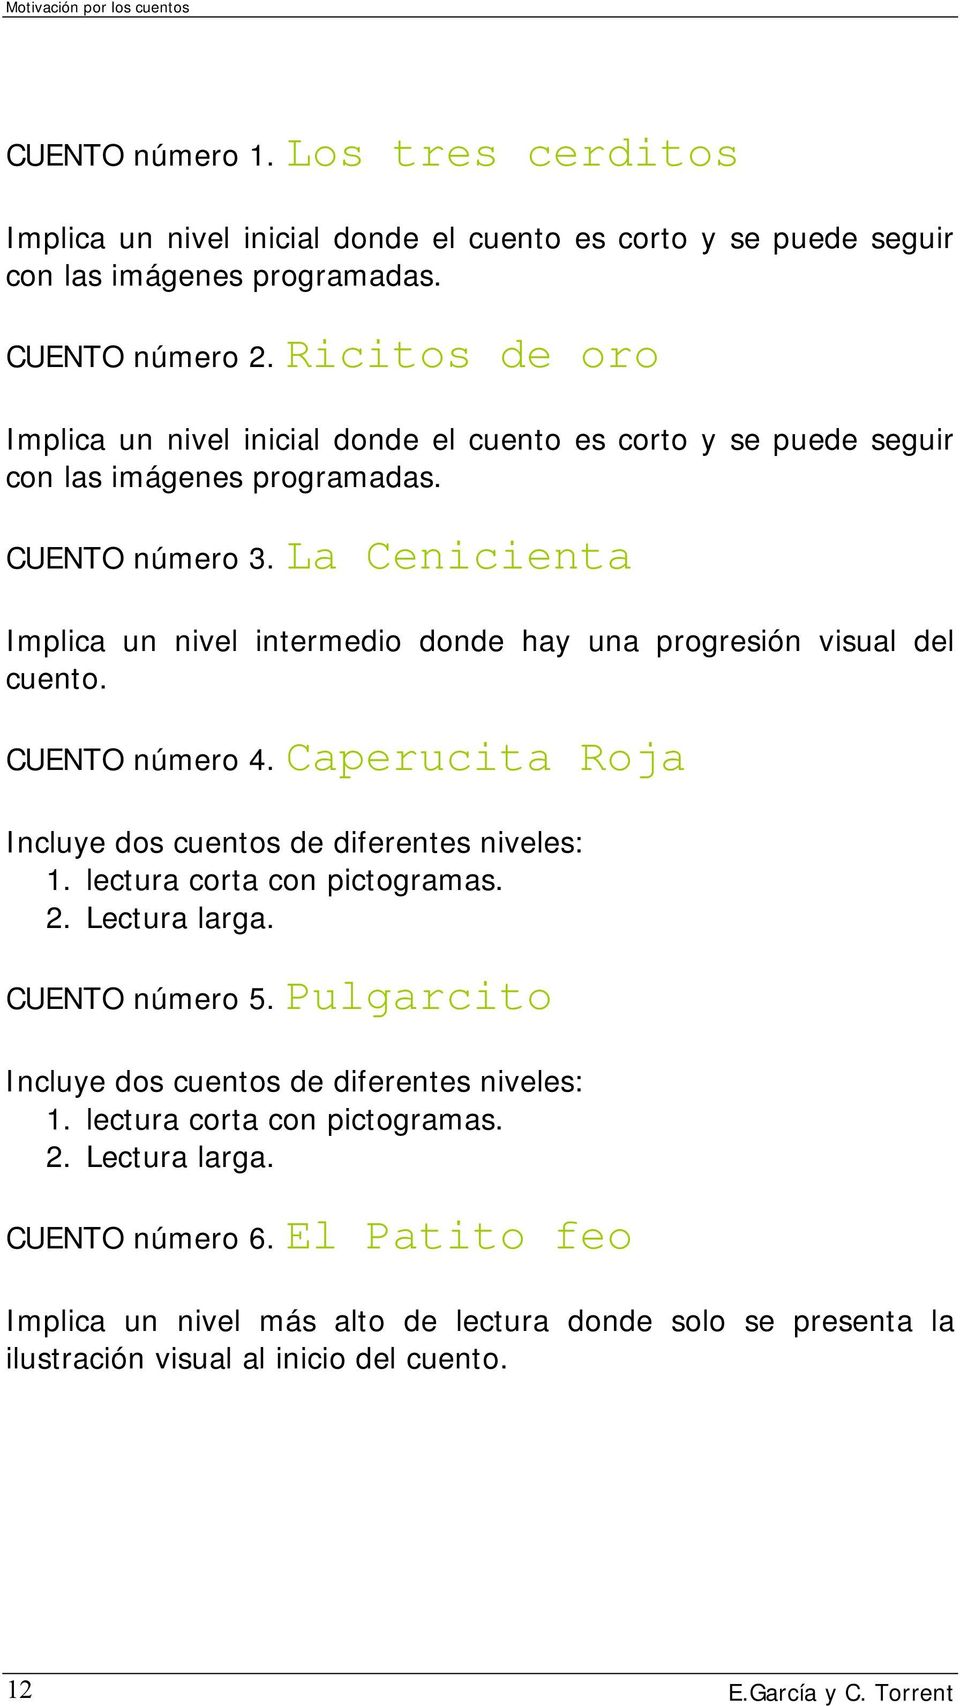 MOTIVACIÓN POR LOS CUENTOS - PDF Free Download